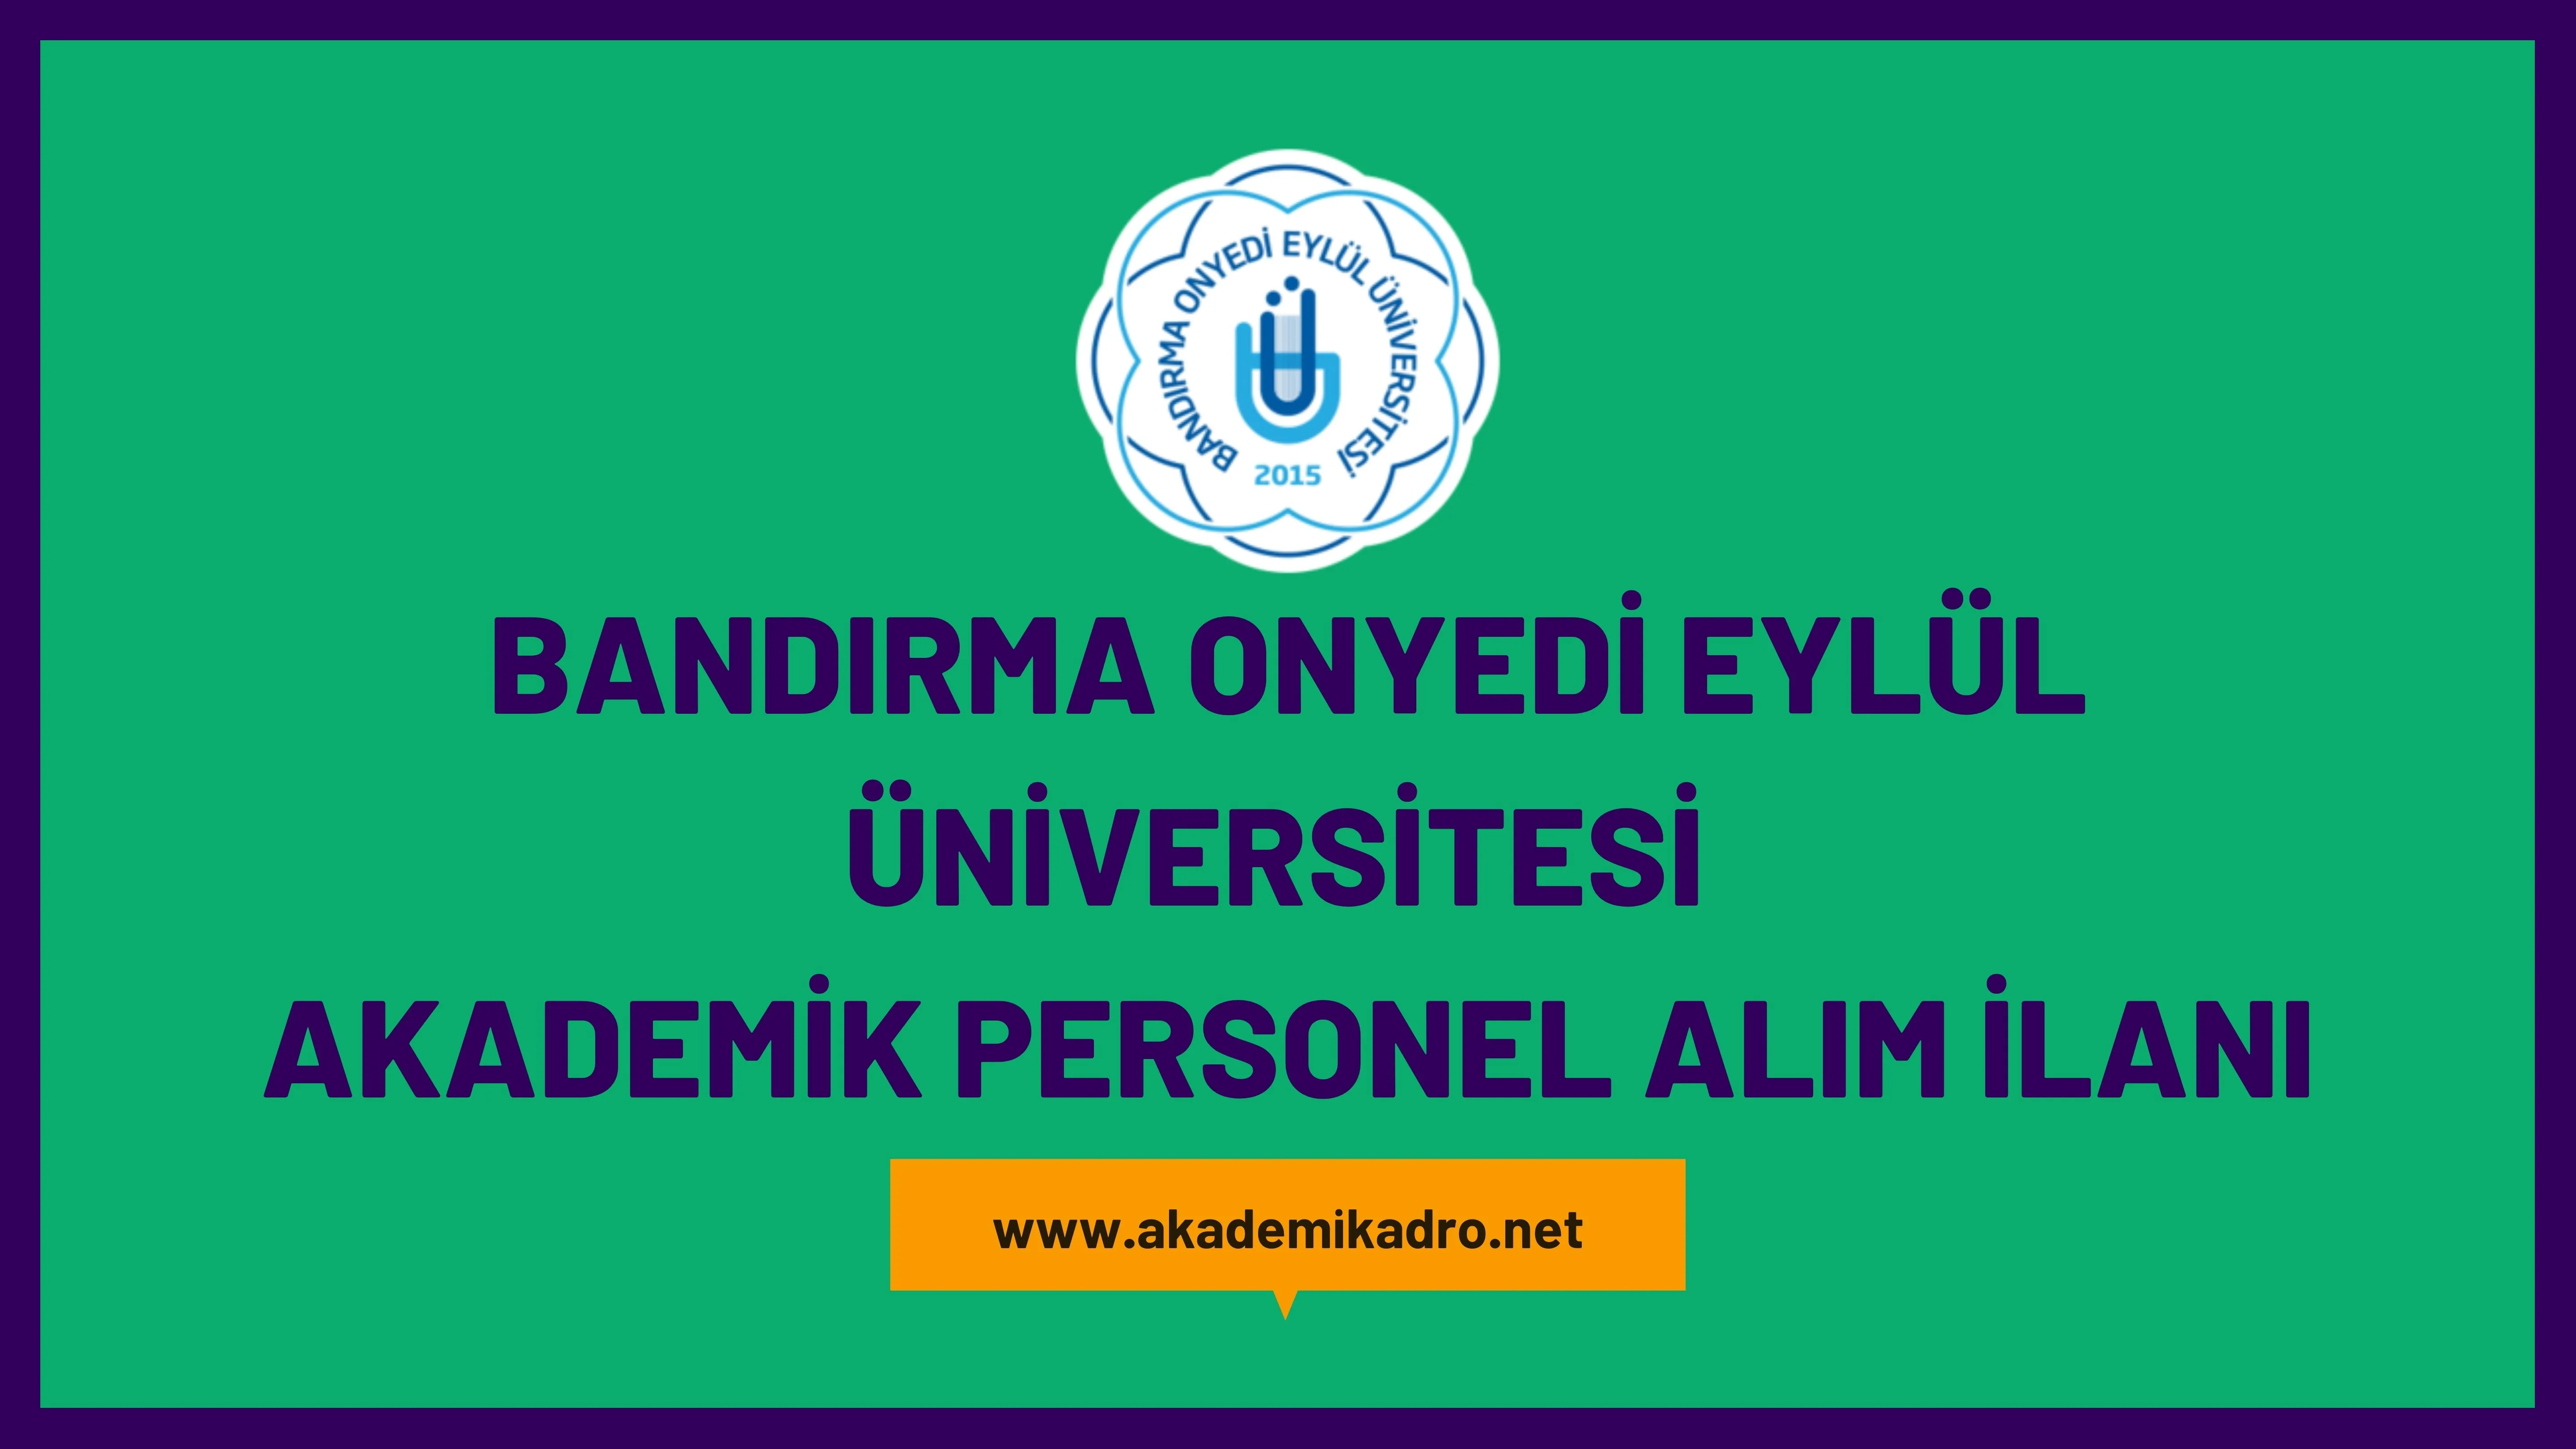 Bandırma Onyedi Eylül Üniversitesi çeşitli branşlarda 25 akademik personel alacak.